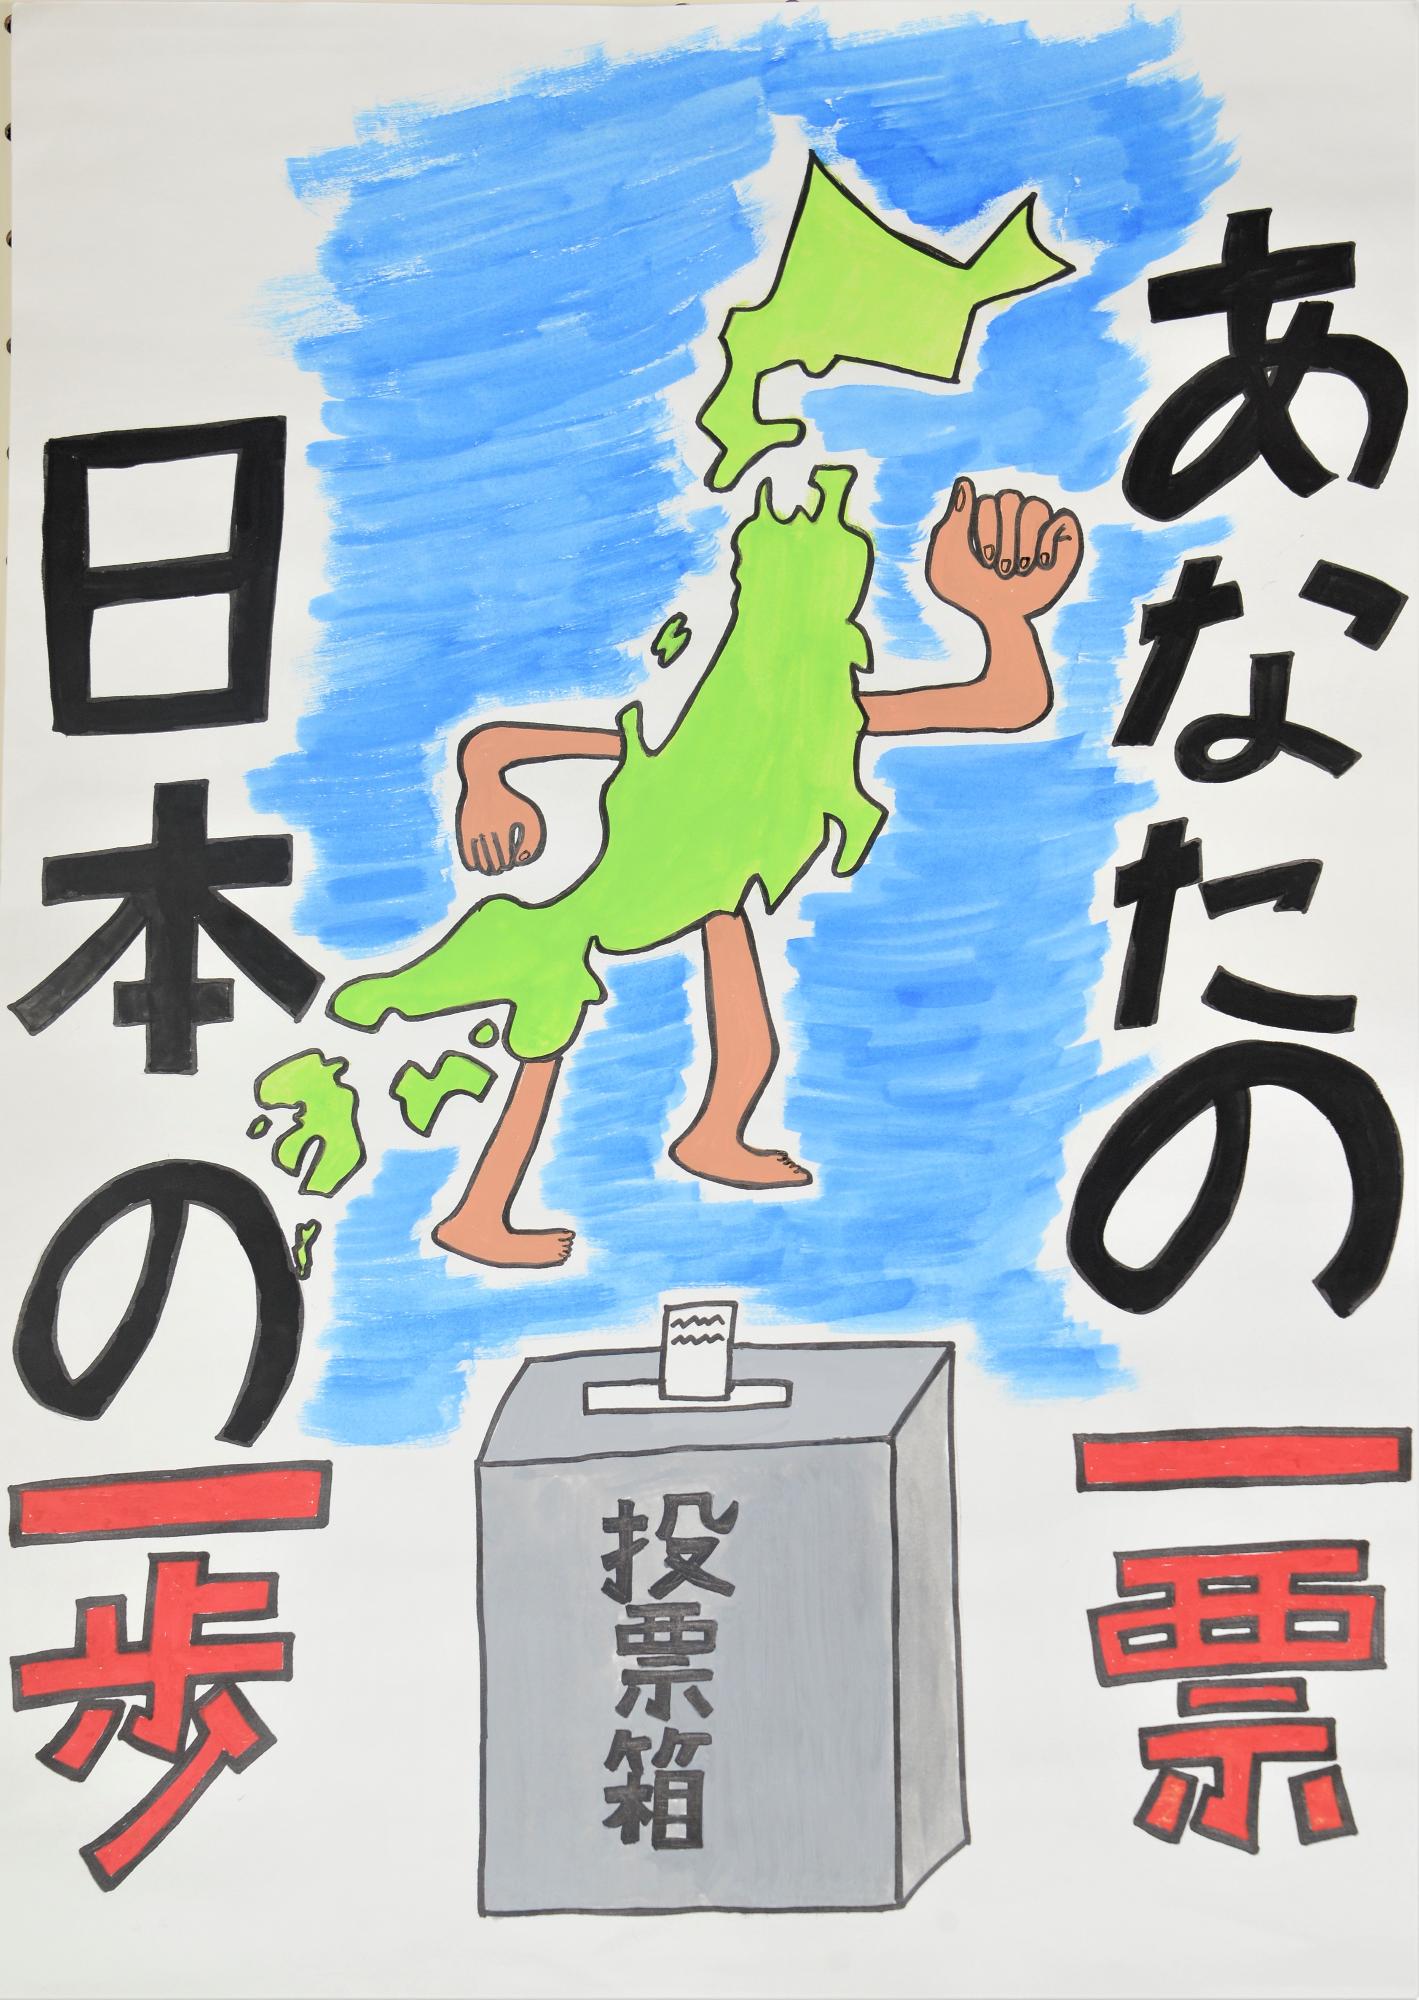 「あなたの一票日本の一歩」日本列島に腕と足が生えたキャラクター描かれているポスター